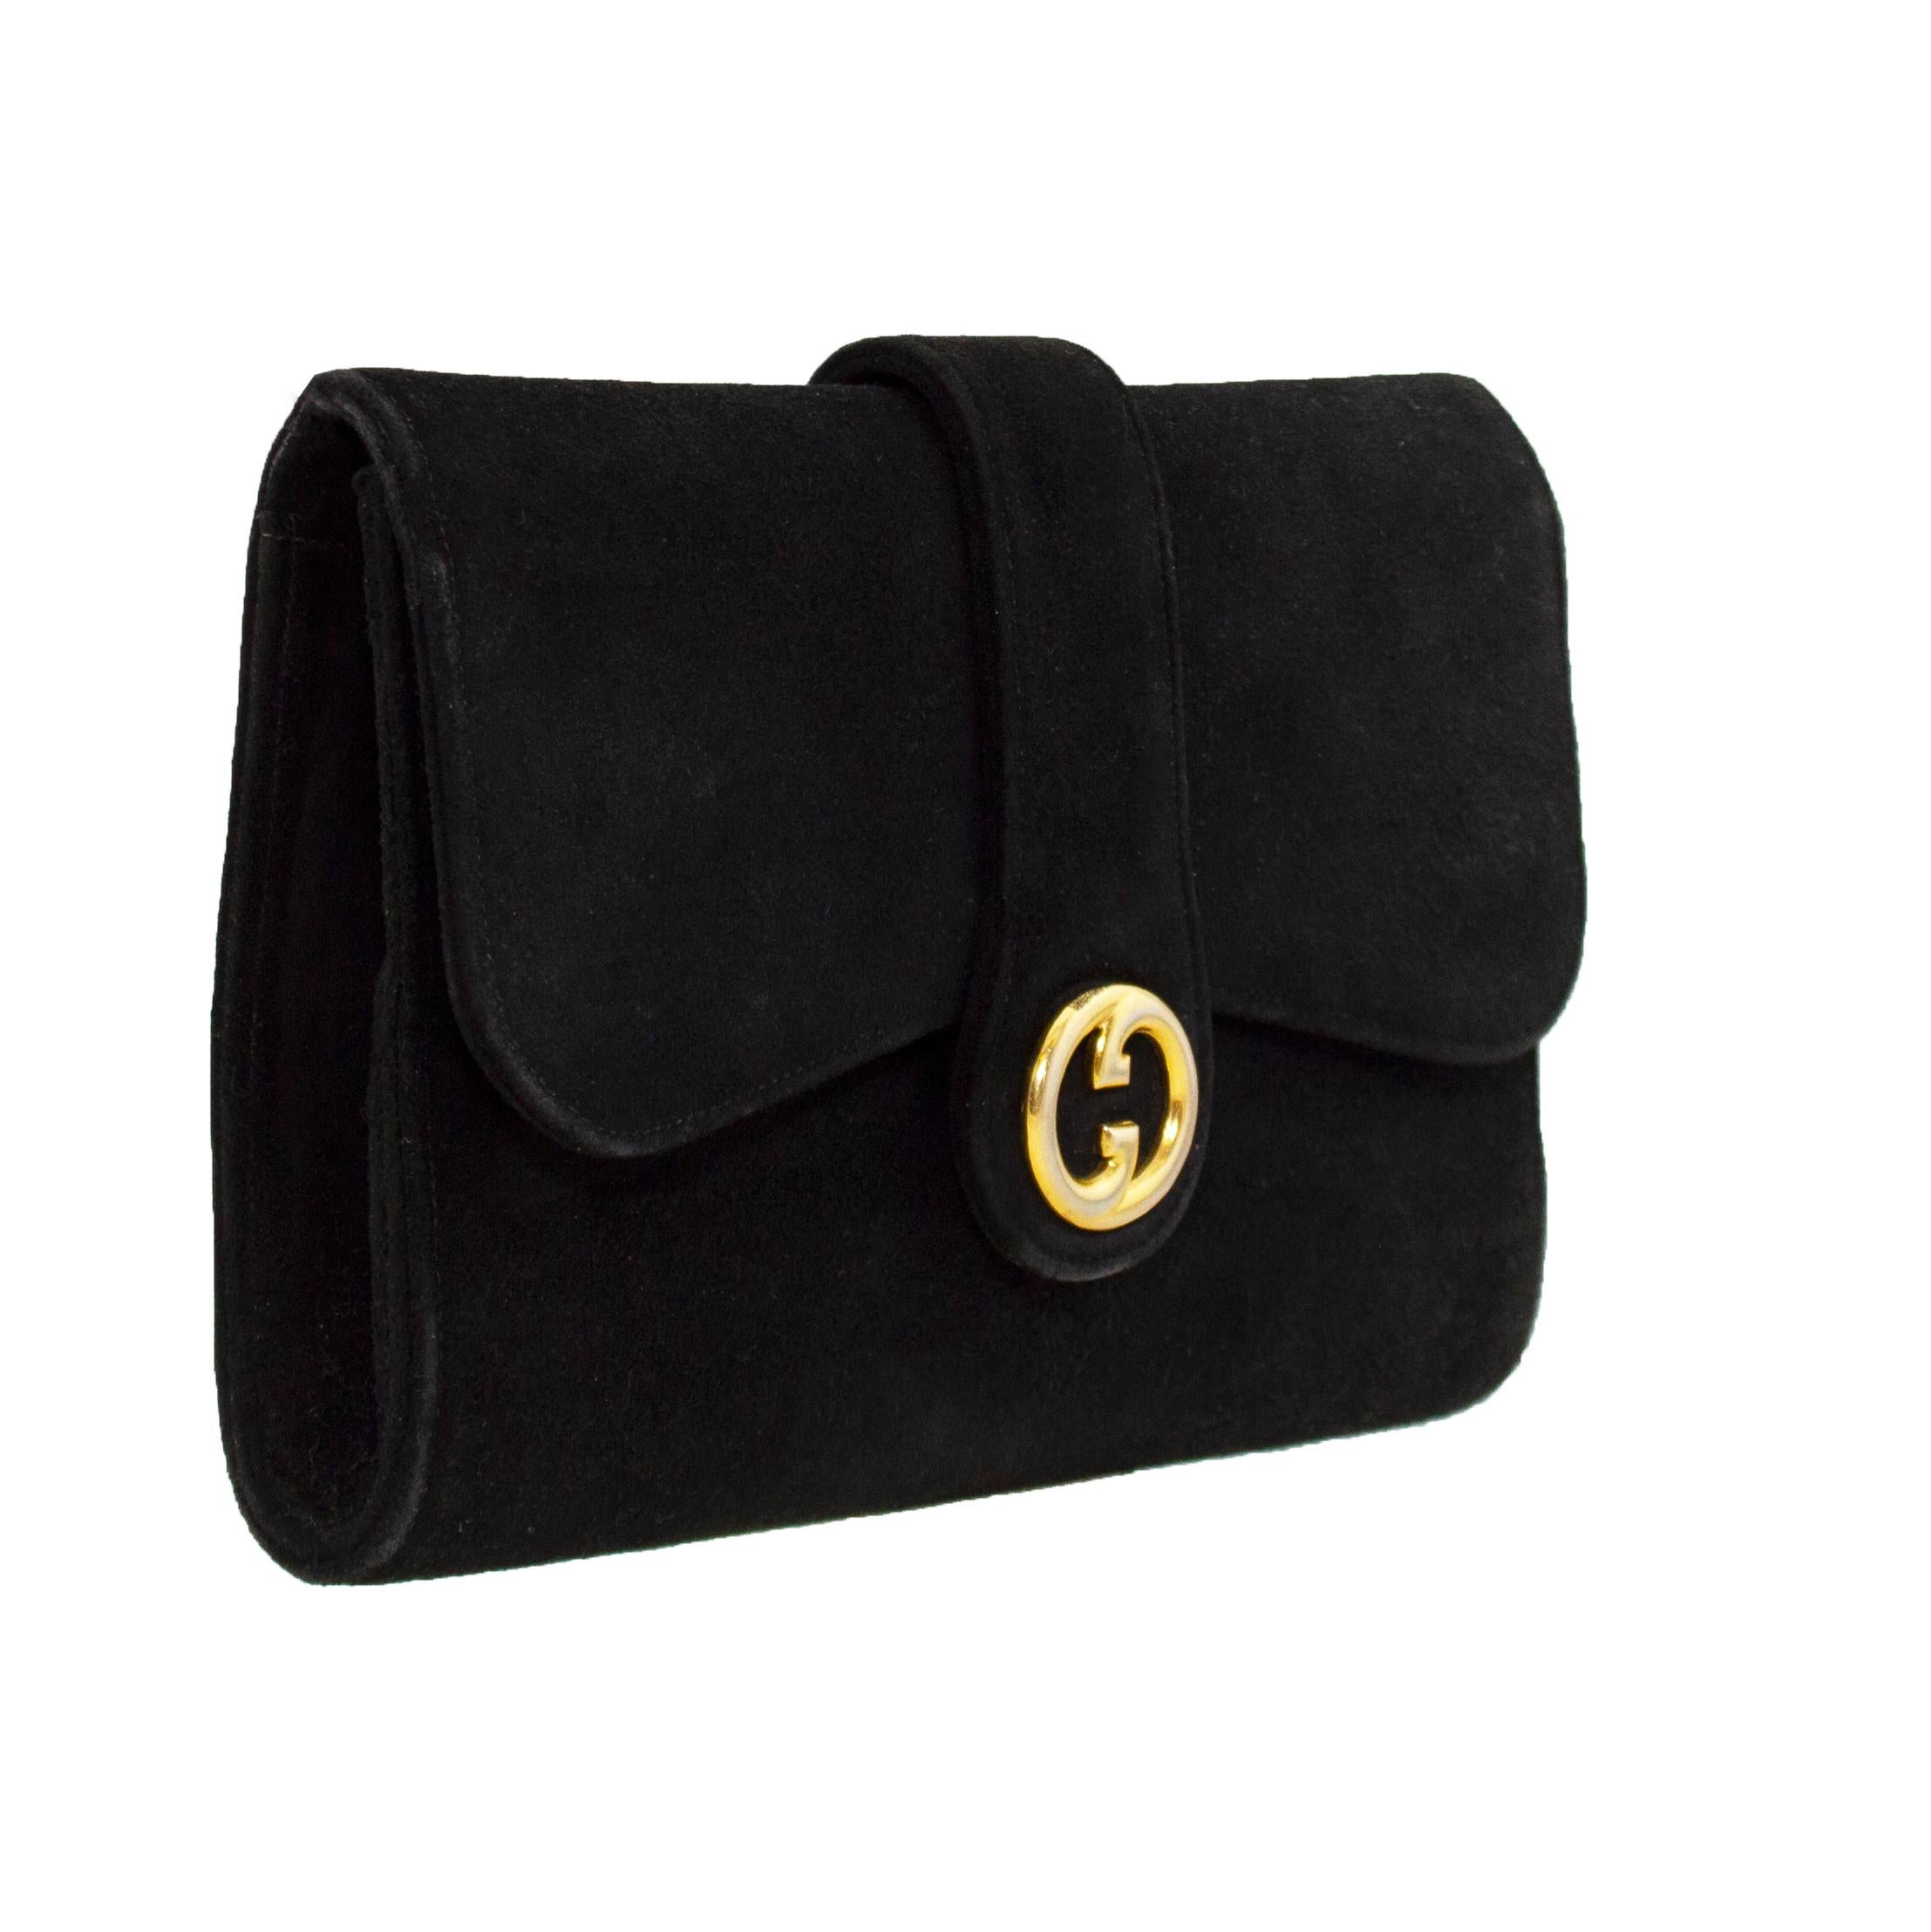 Schwarze Abendtasche aus Wildleder von Gucci aus den 1960er Jahren. Umschlagform mit ineinandergreifendem goldenen Metall-G-Logo in der Mitte, das einen Druckknopfverschluss verbirgt. Innenausstattung aus schwarzem Leder mit zwei offenen